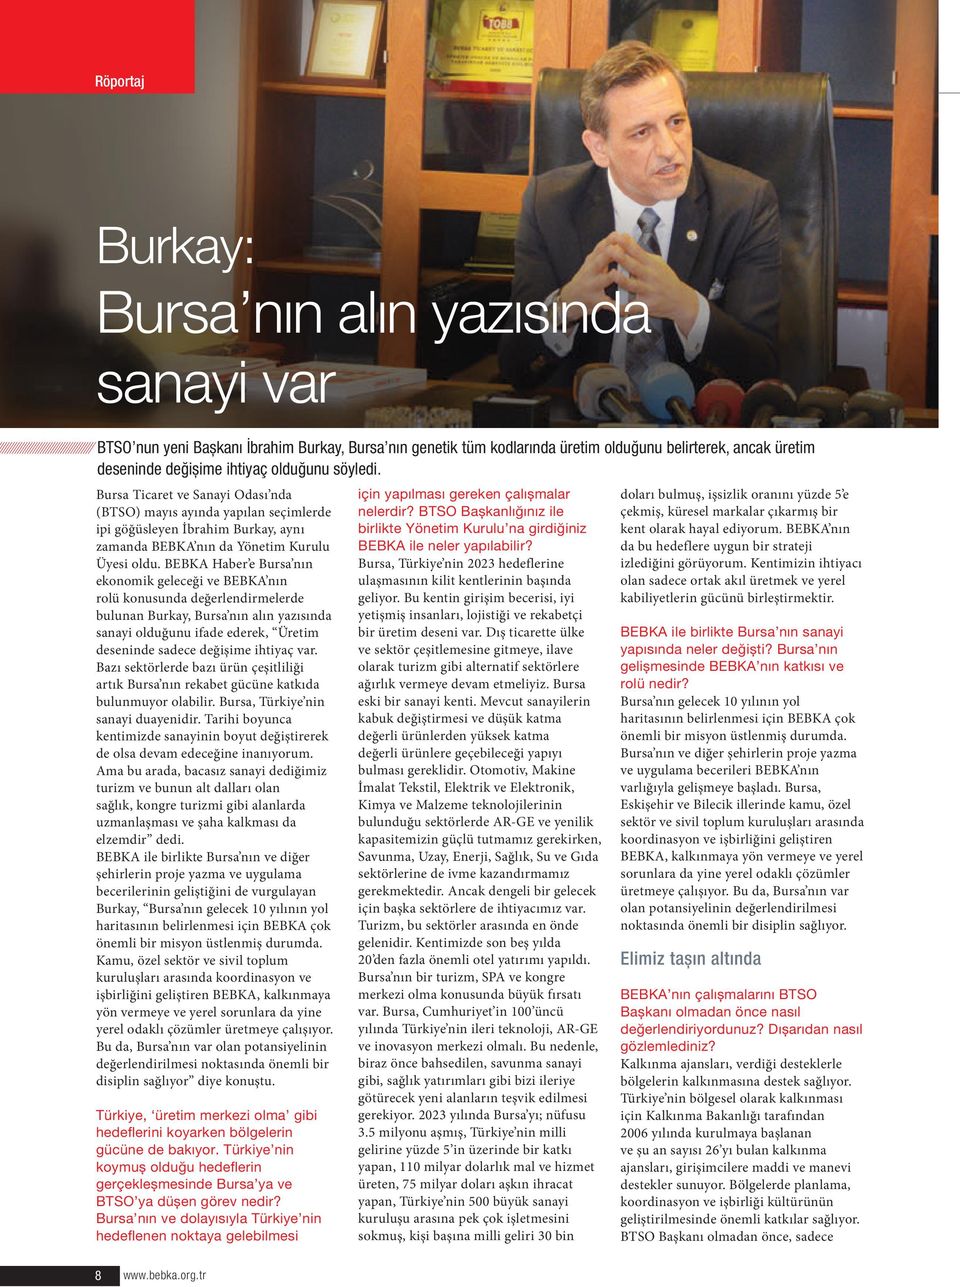 BEBKA Haber e Bursa nın ekonomik geleceği ve BEBKA nın rolü konusunda değerlendirmelerde bulunan Burkay, Bursa nın alın yazısında sanayi olduğunu ifade ederek, Üretim deseninde sadece değişime